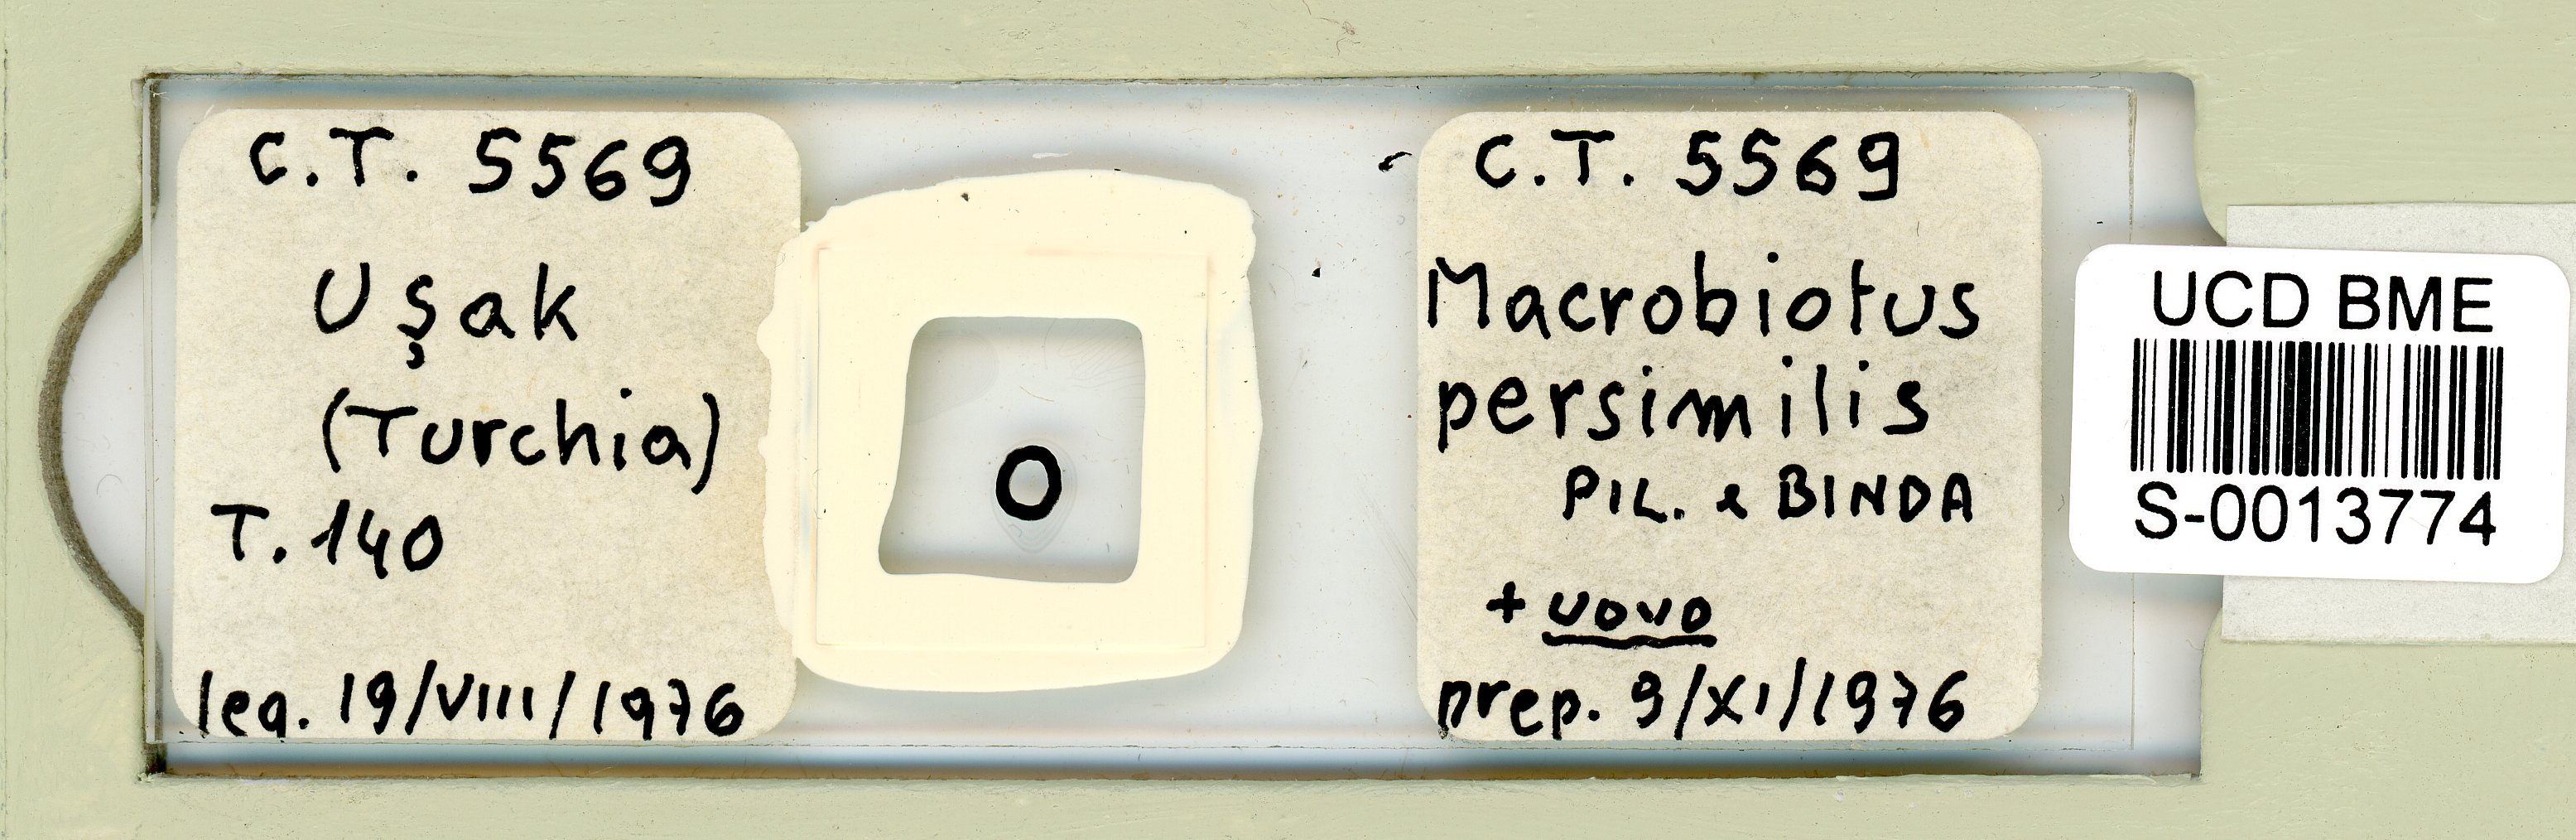 Macrobiotus persimilis image